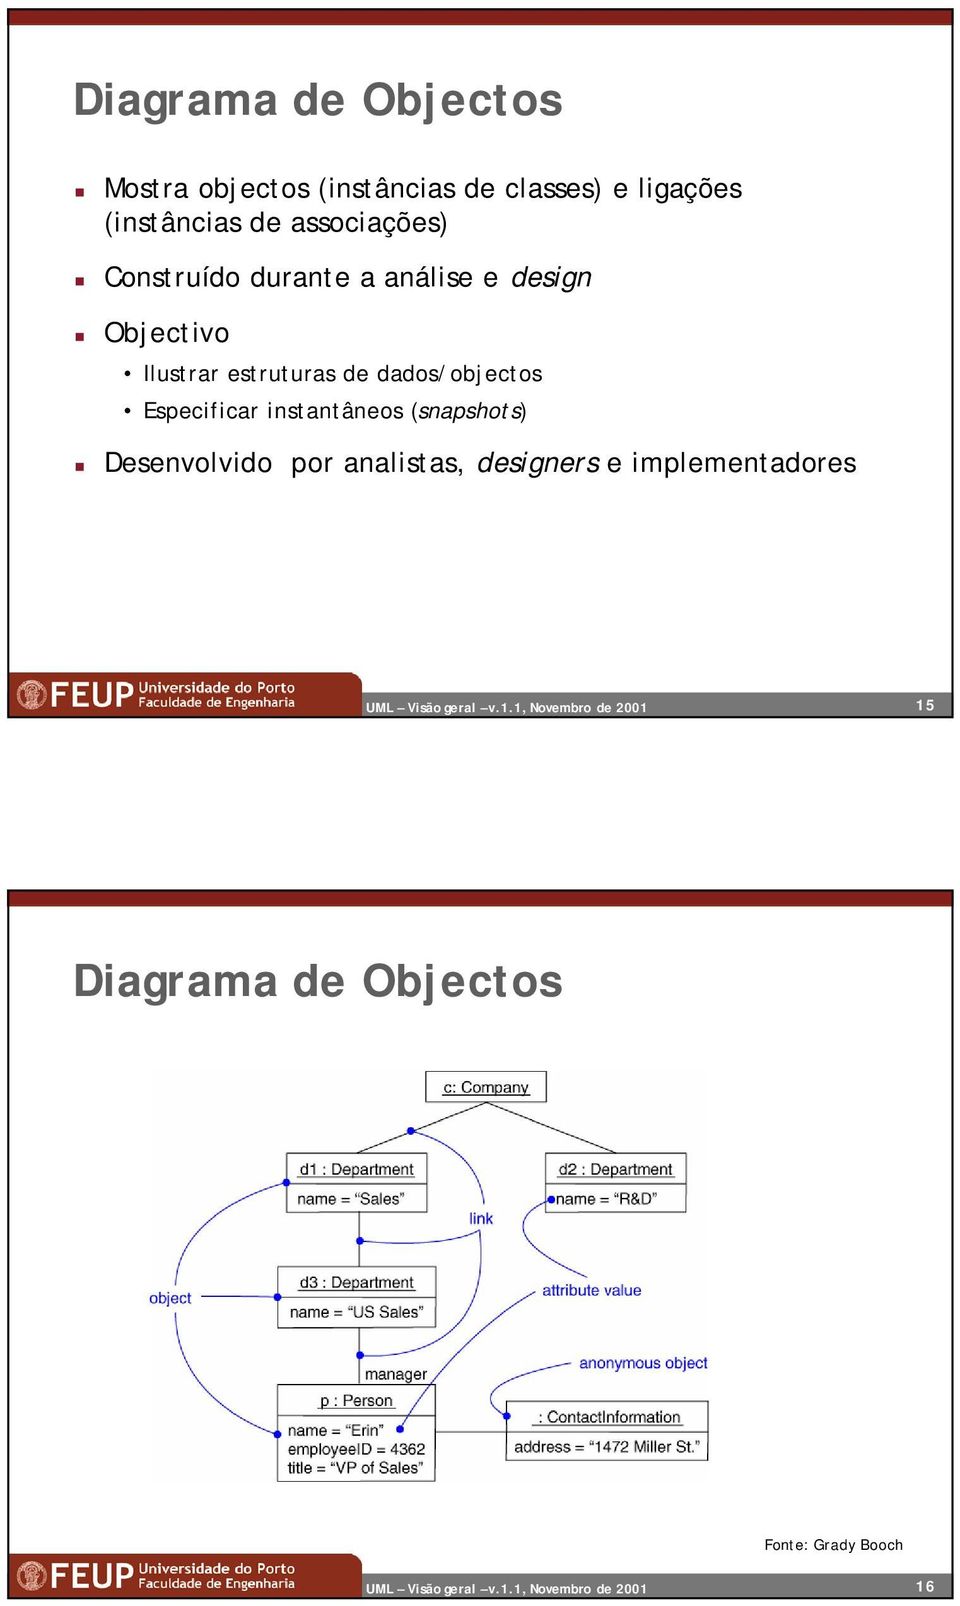 Ilustrar estruturas de dados/objectos Especificar instantâneos